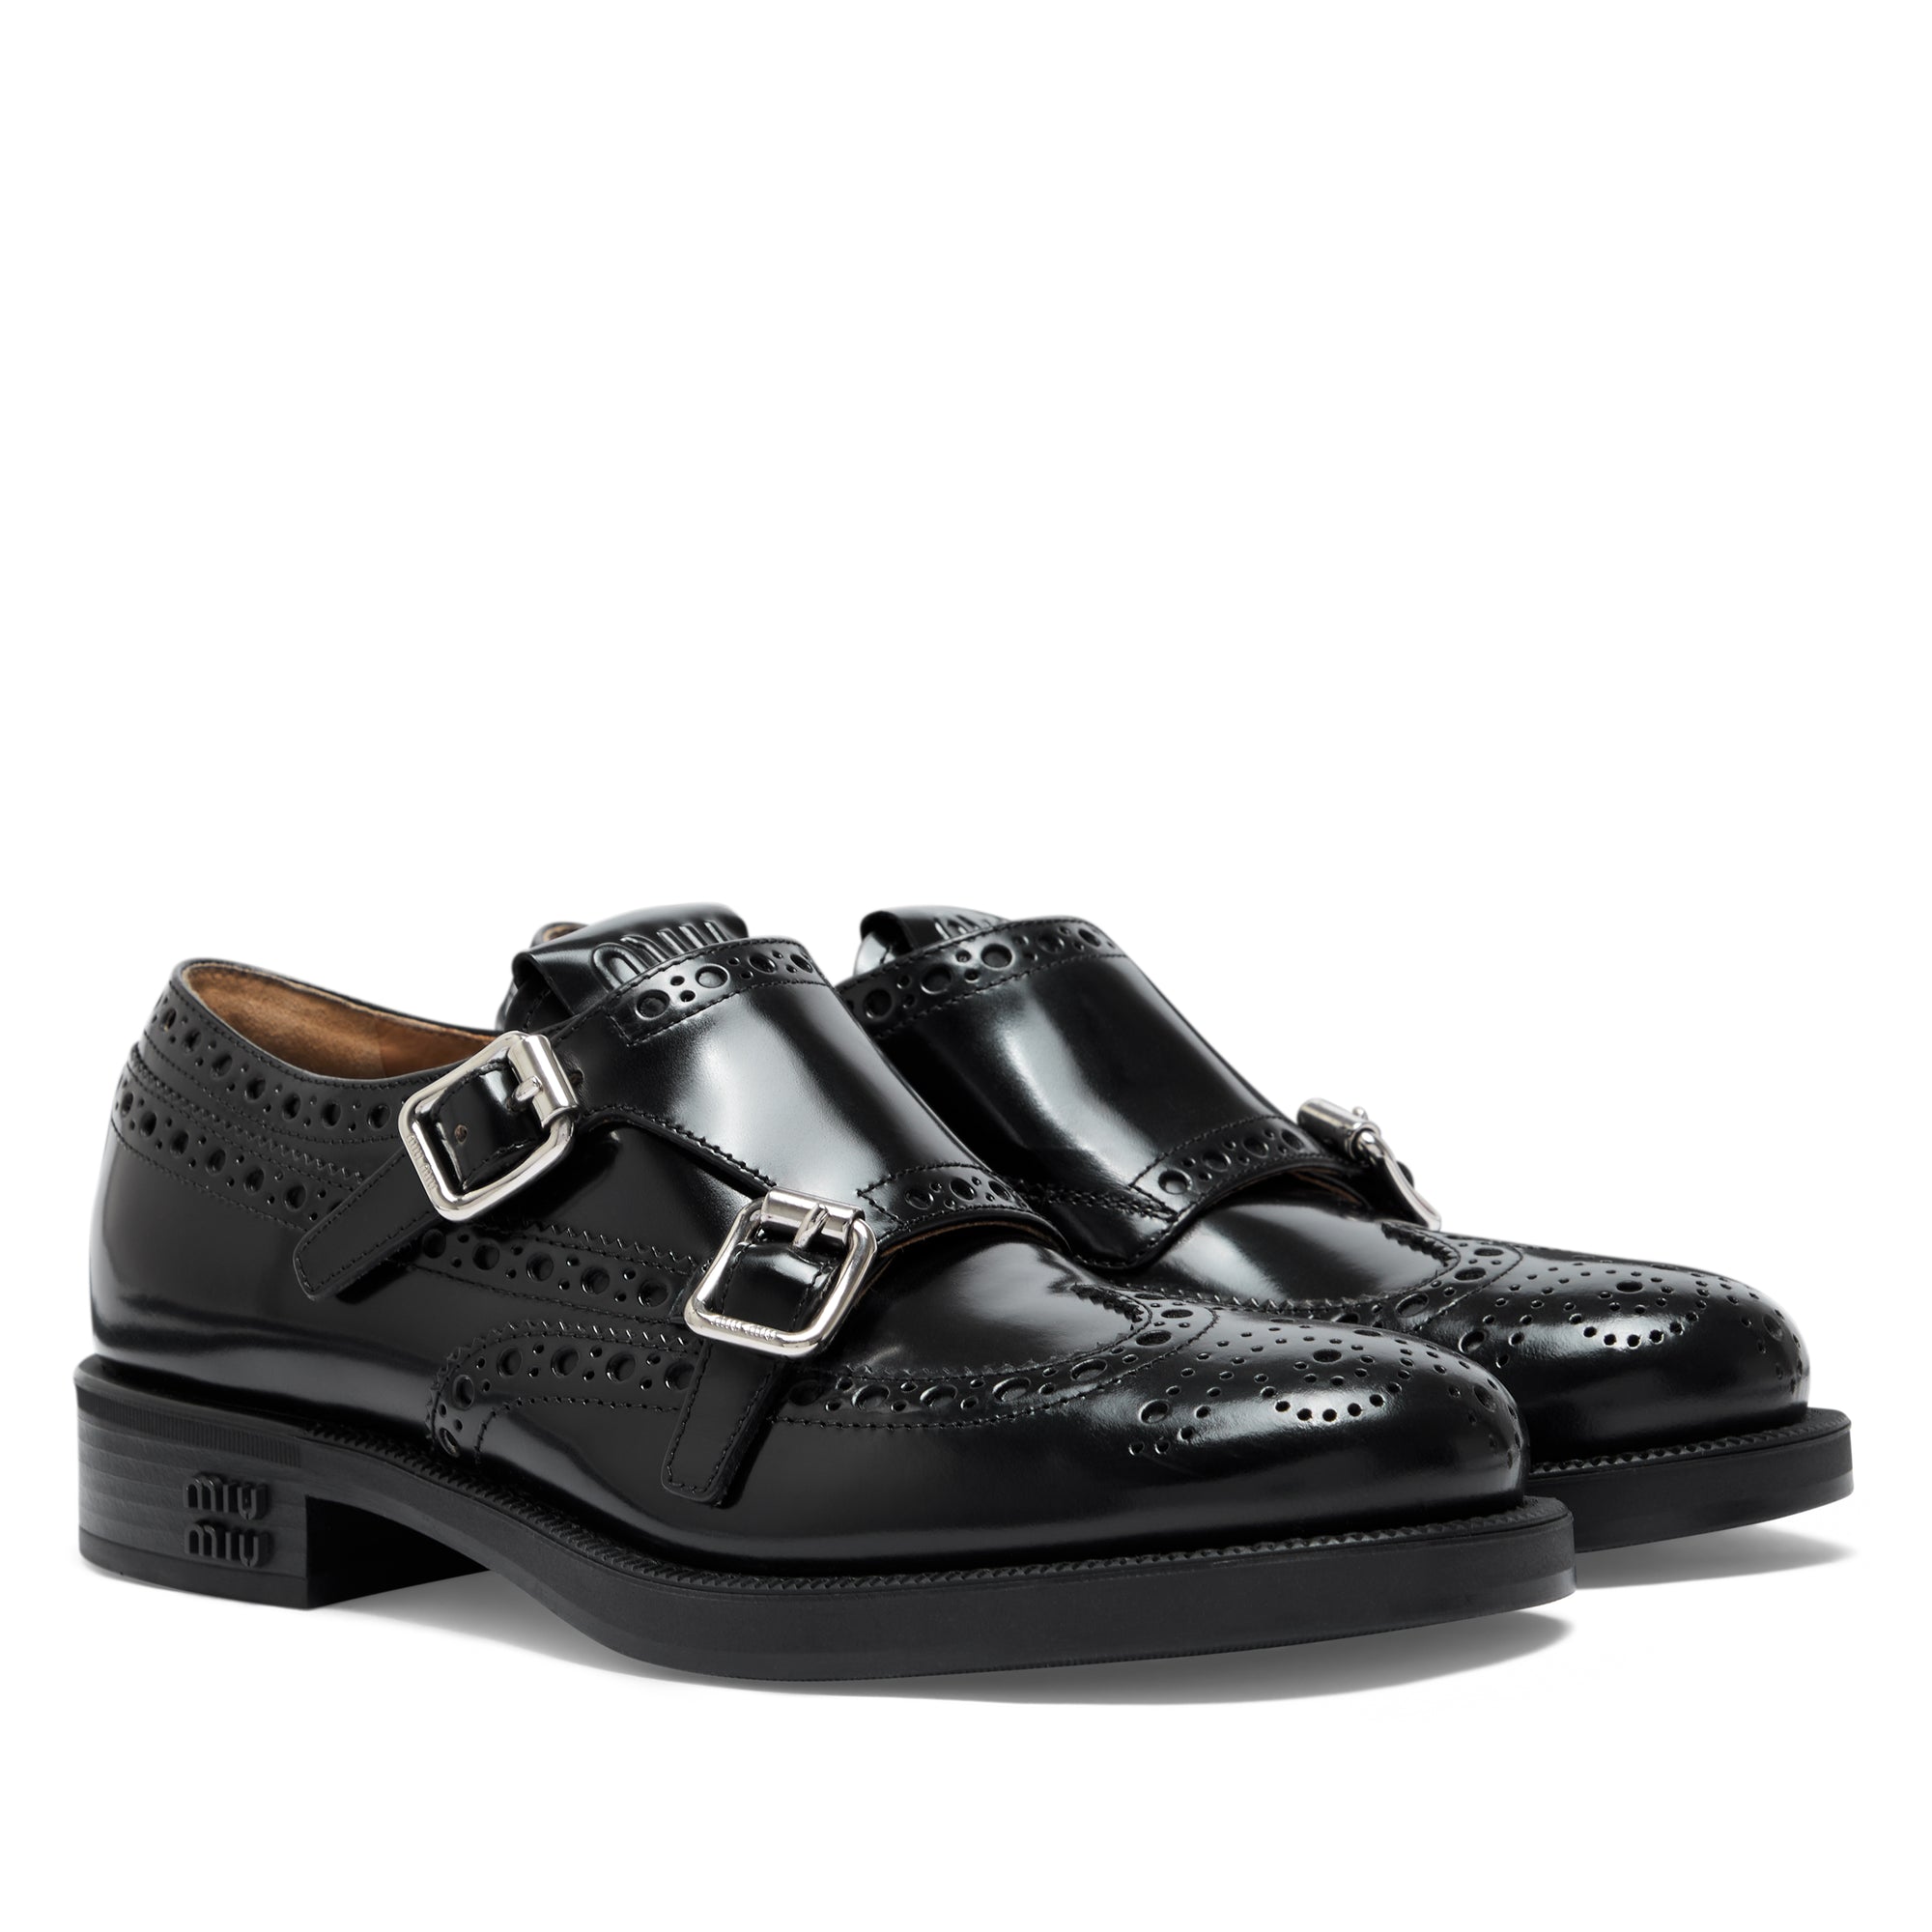 Miu Miu - Church’s Women’s Brushed Leather Double Monk Brogue Shoes - (Black) view 3